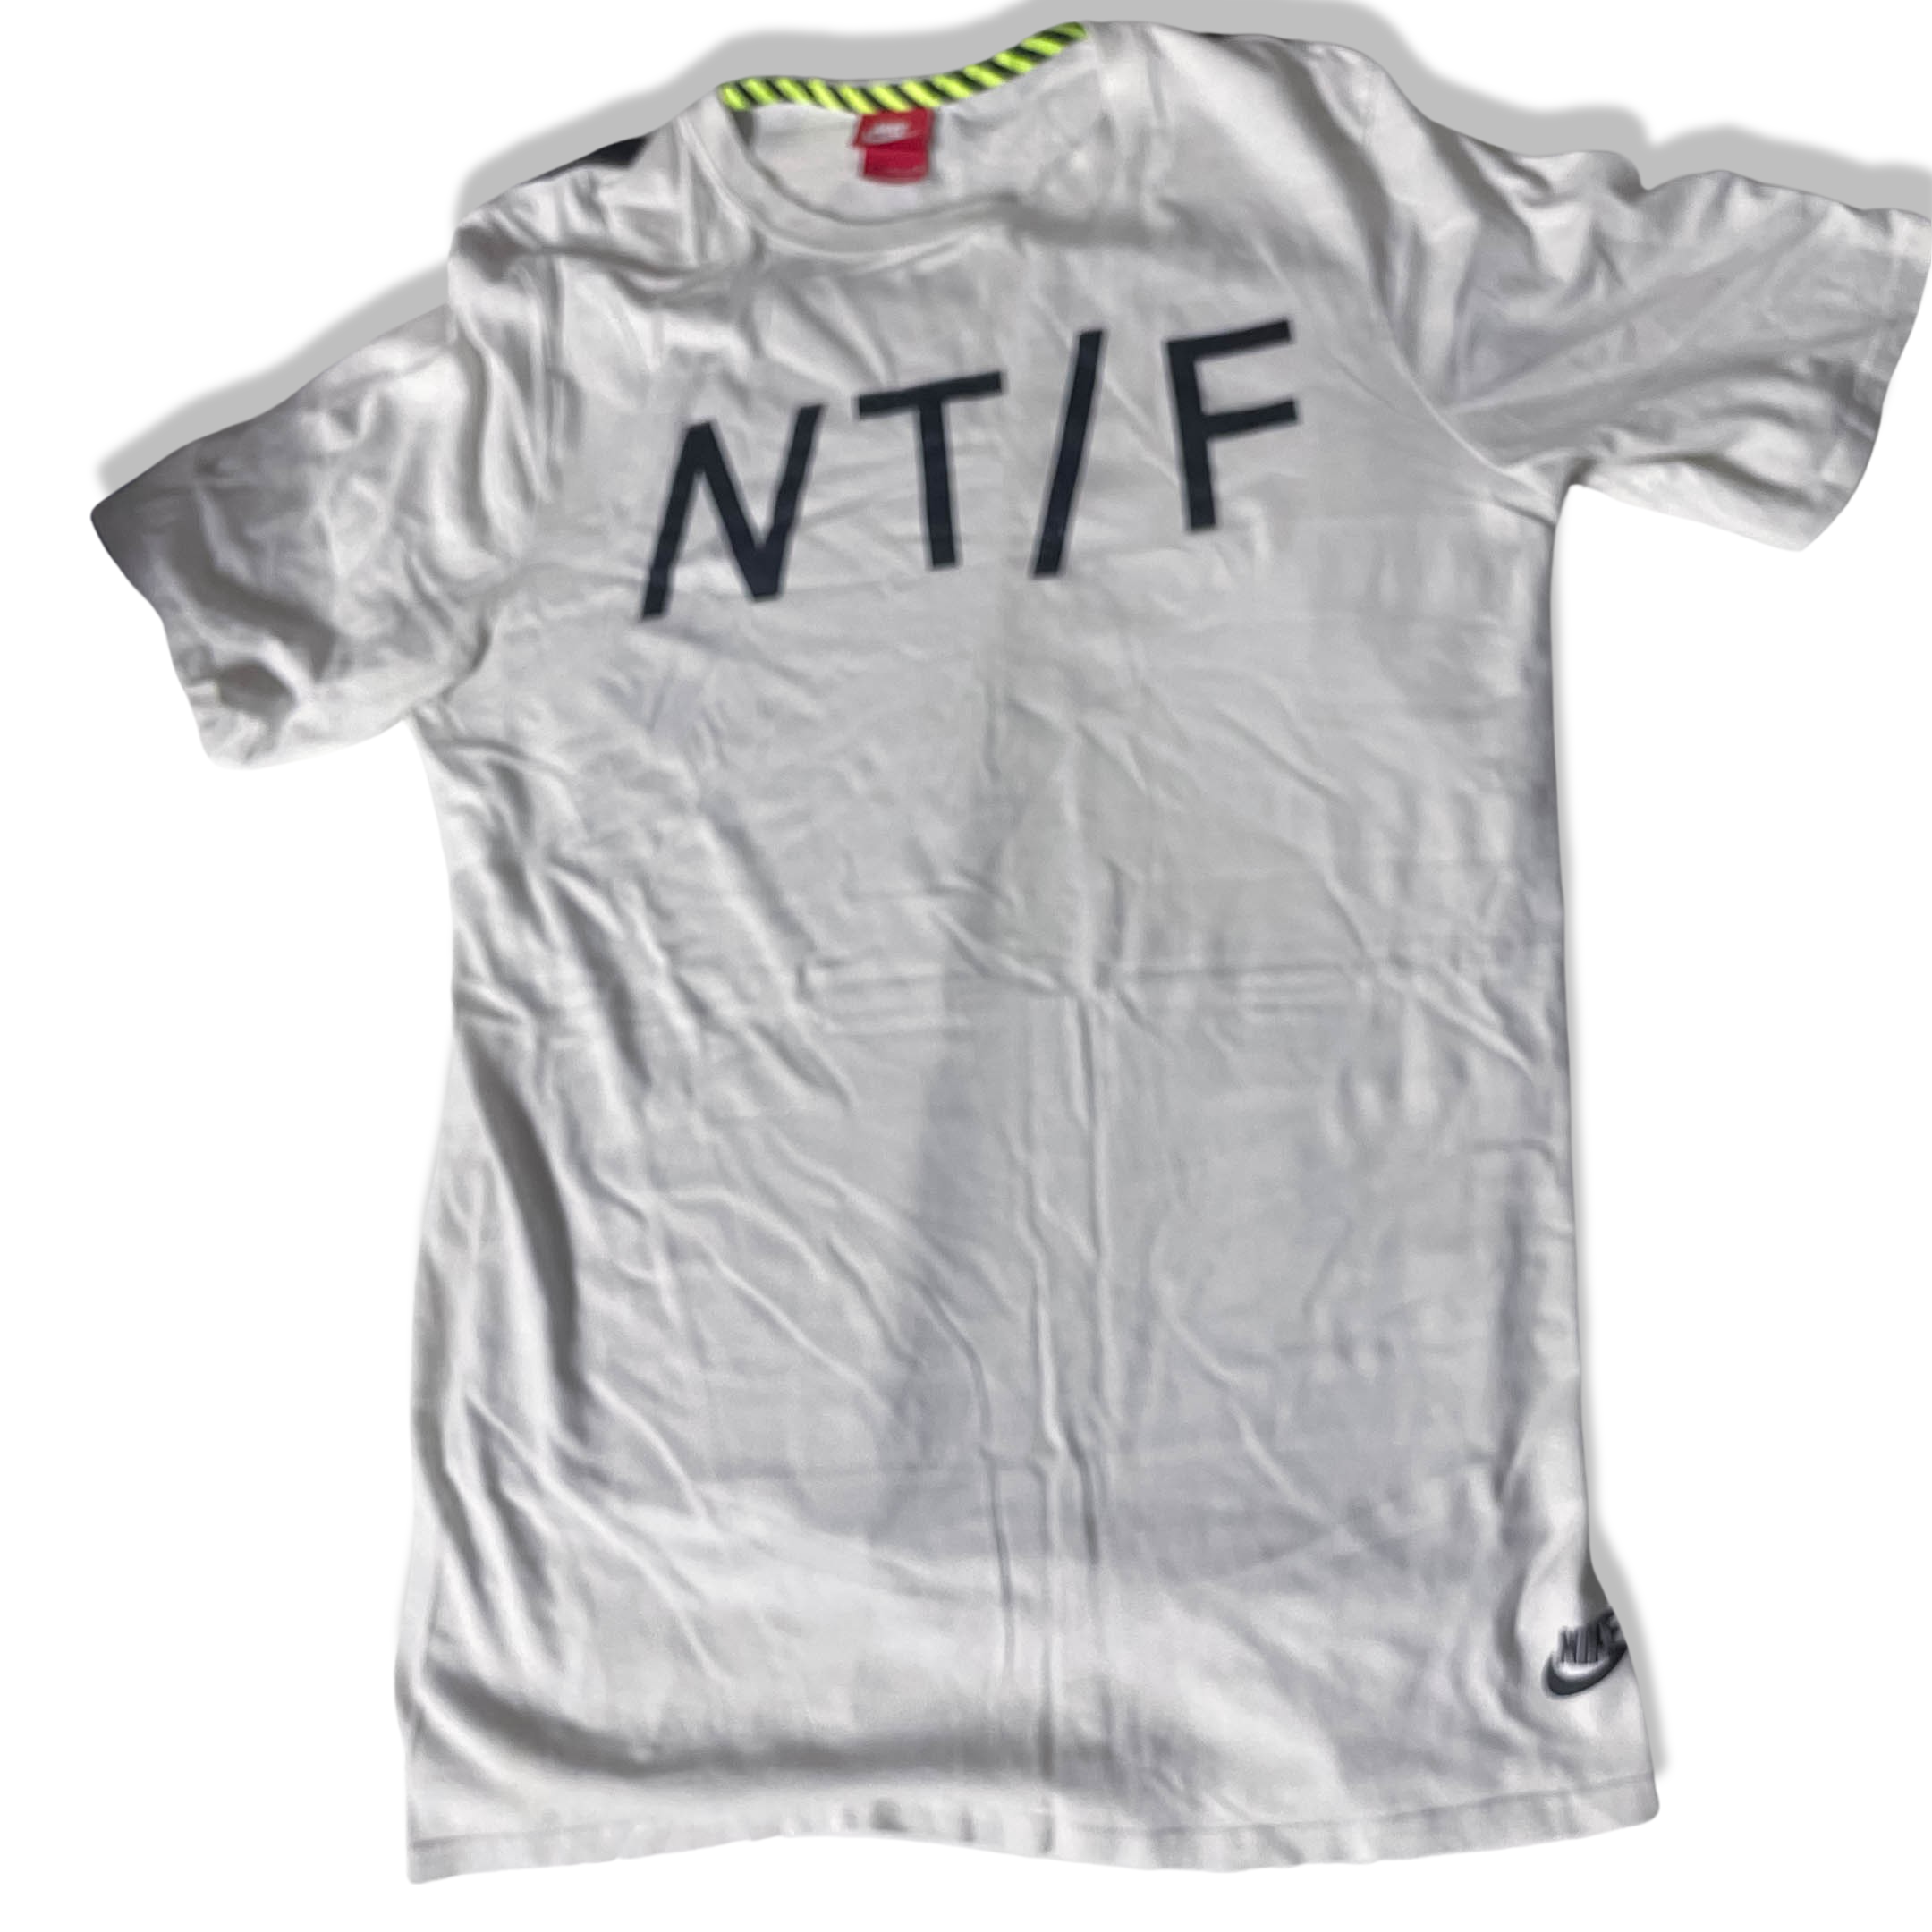 Vintage White Nike NTF streetwear vintage t-shirts size M